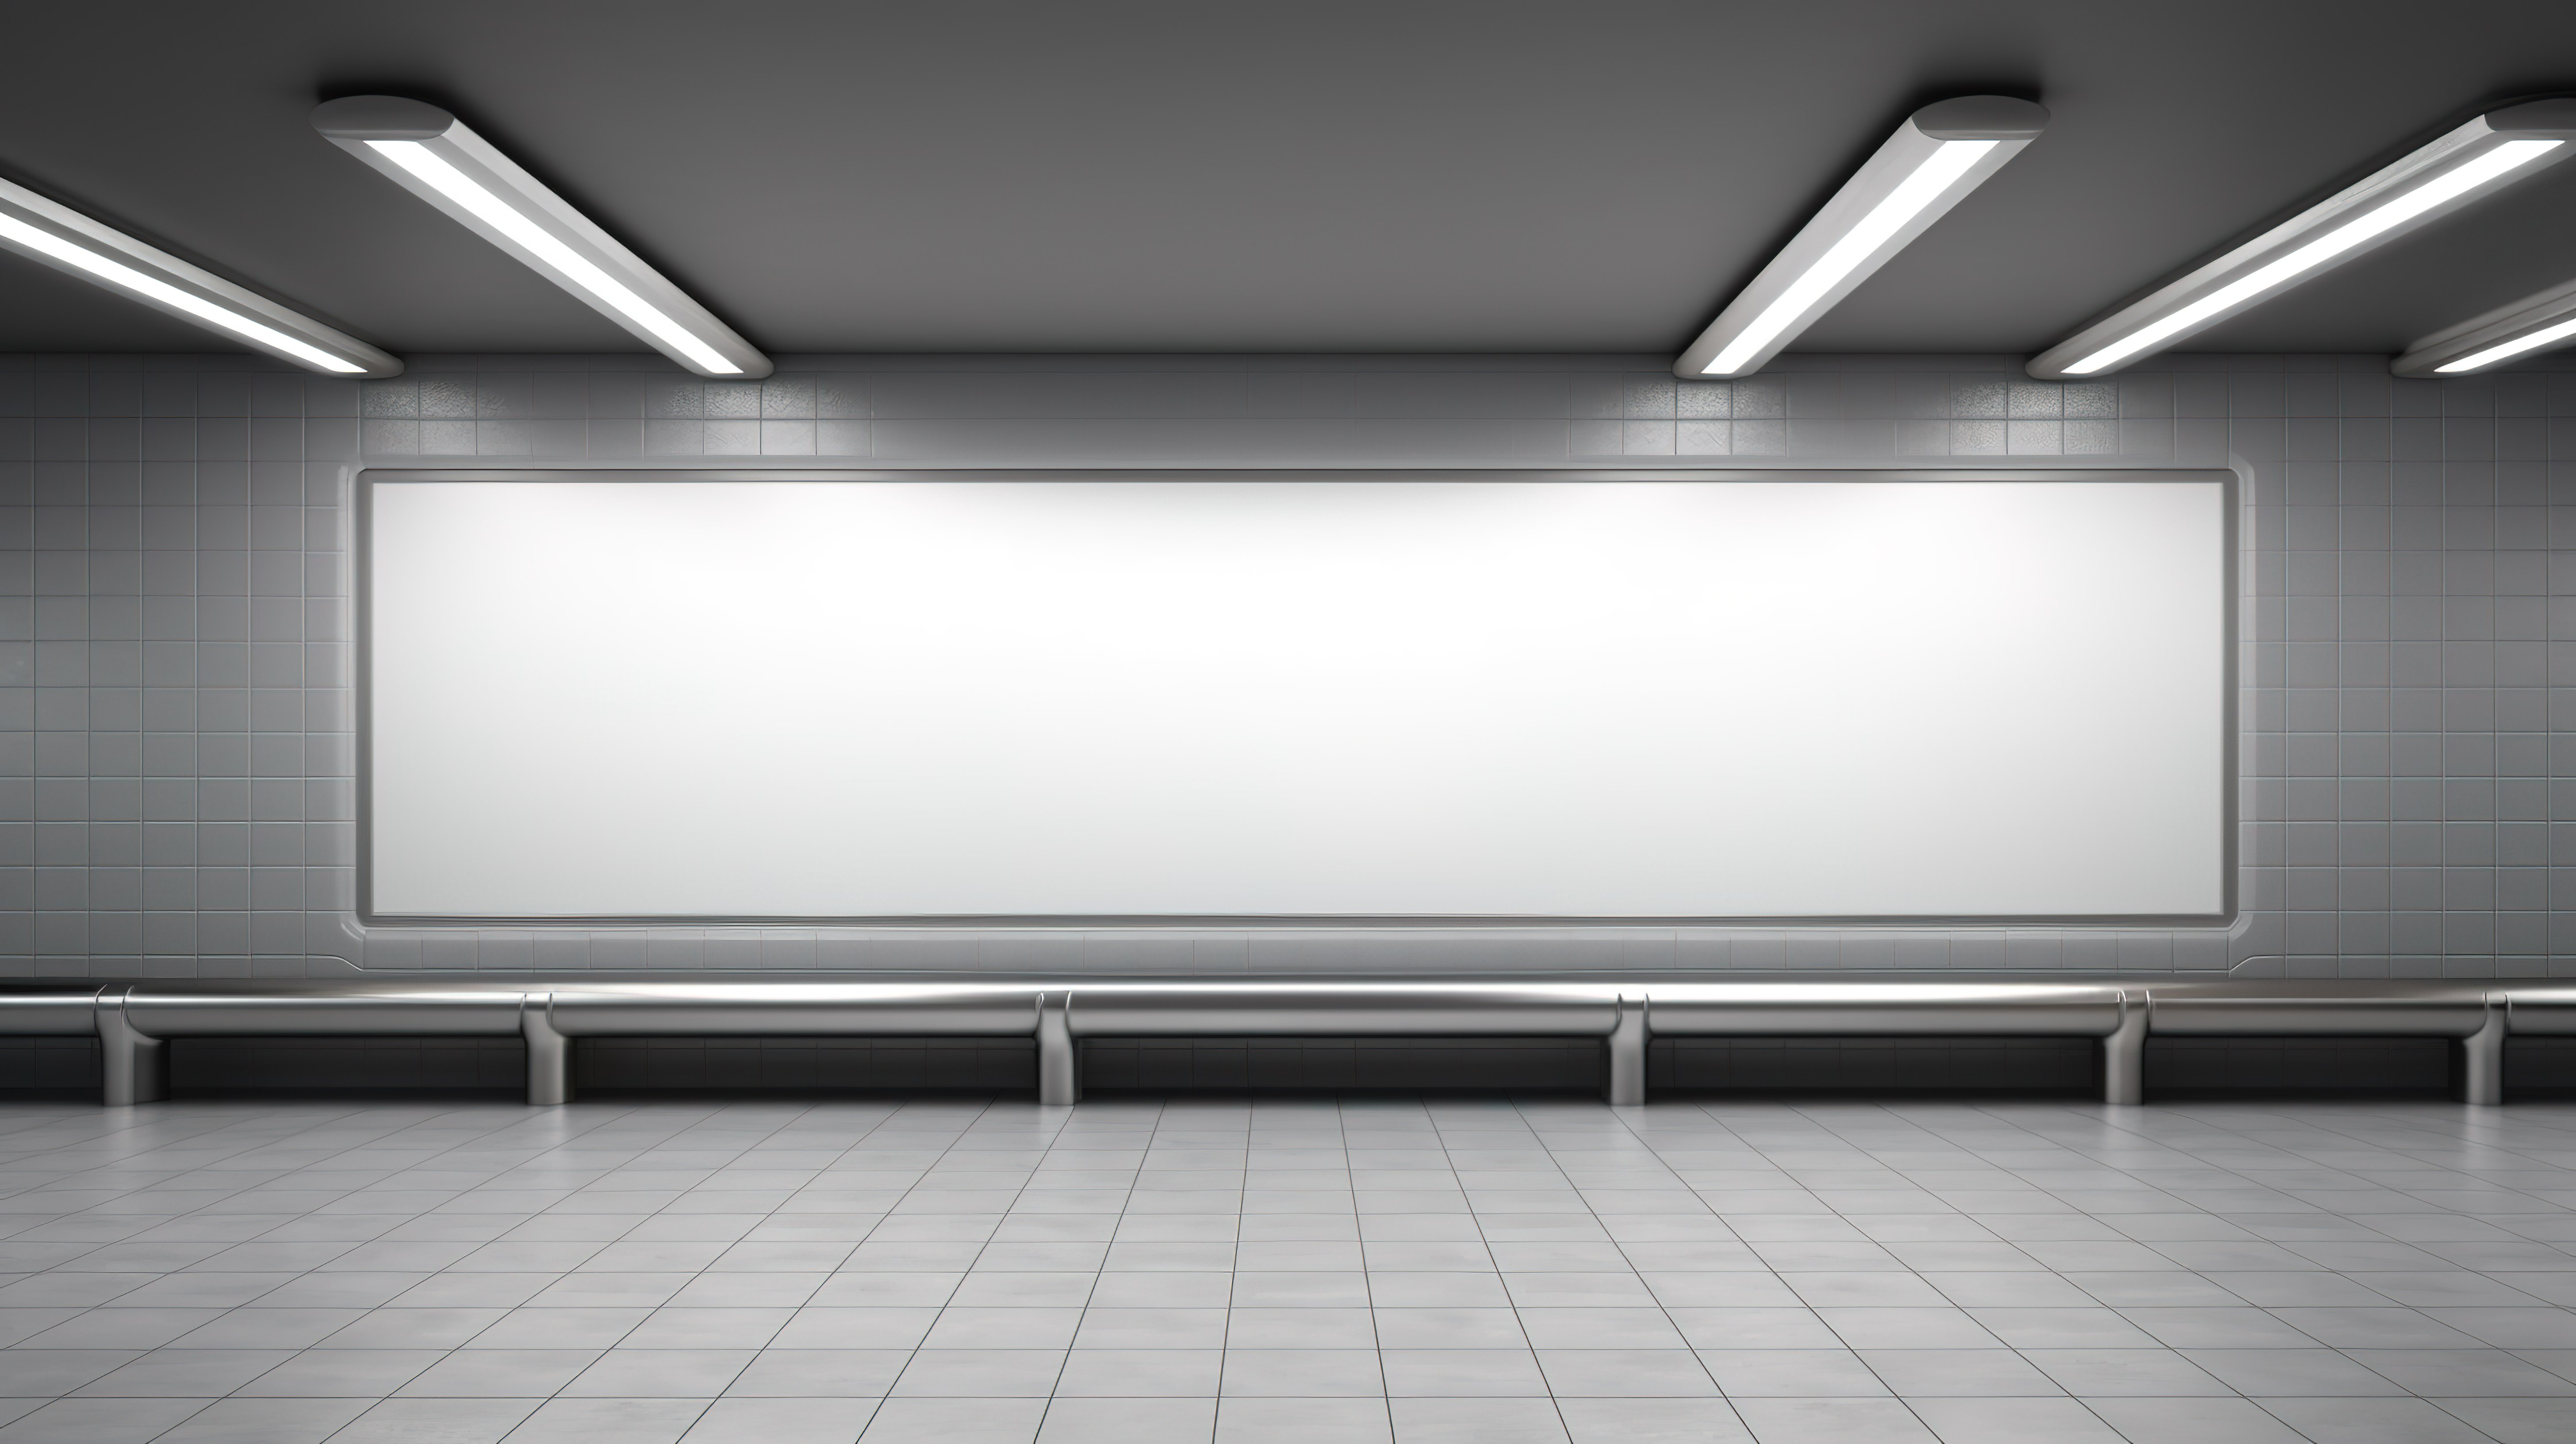 3D 渲染模型在空地铁站上展示您的广告，浅灰色空白墙上有导轨和深色地板前视图图片